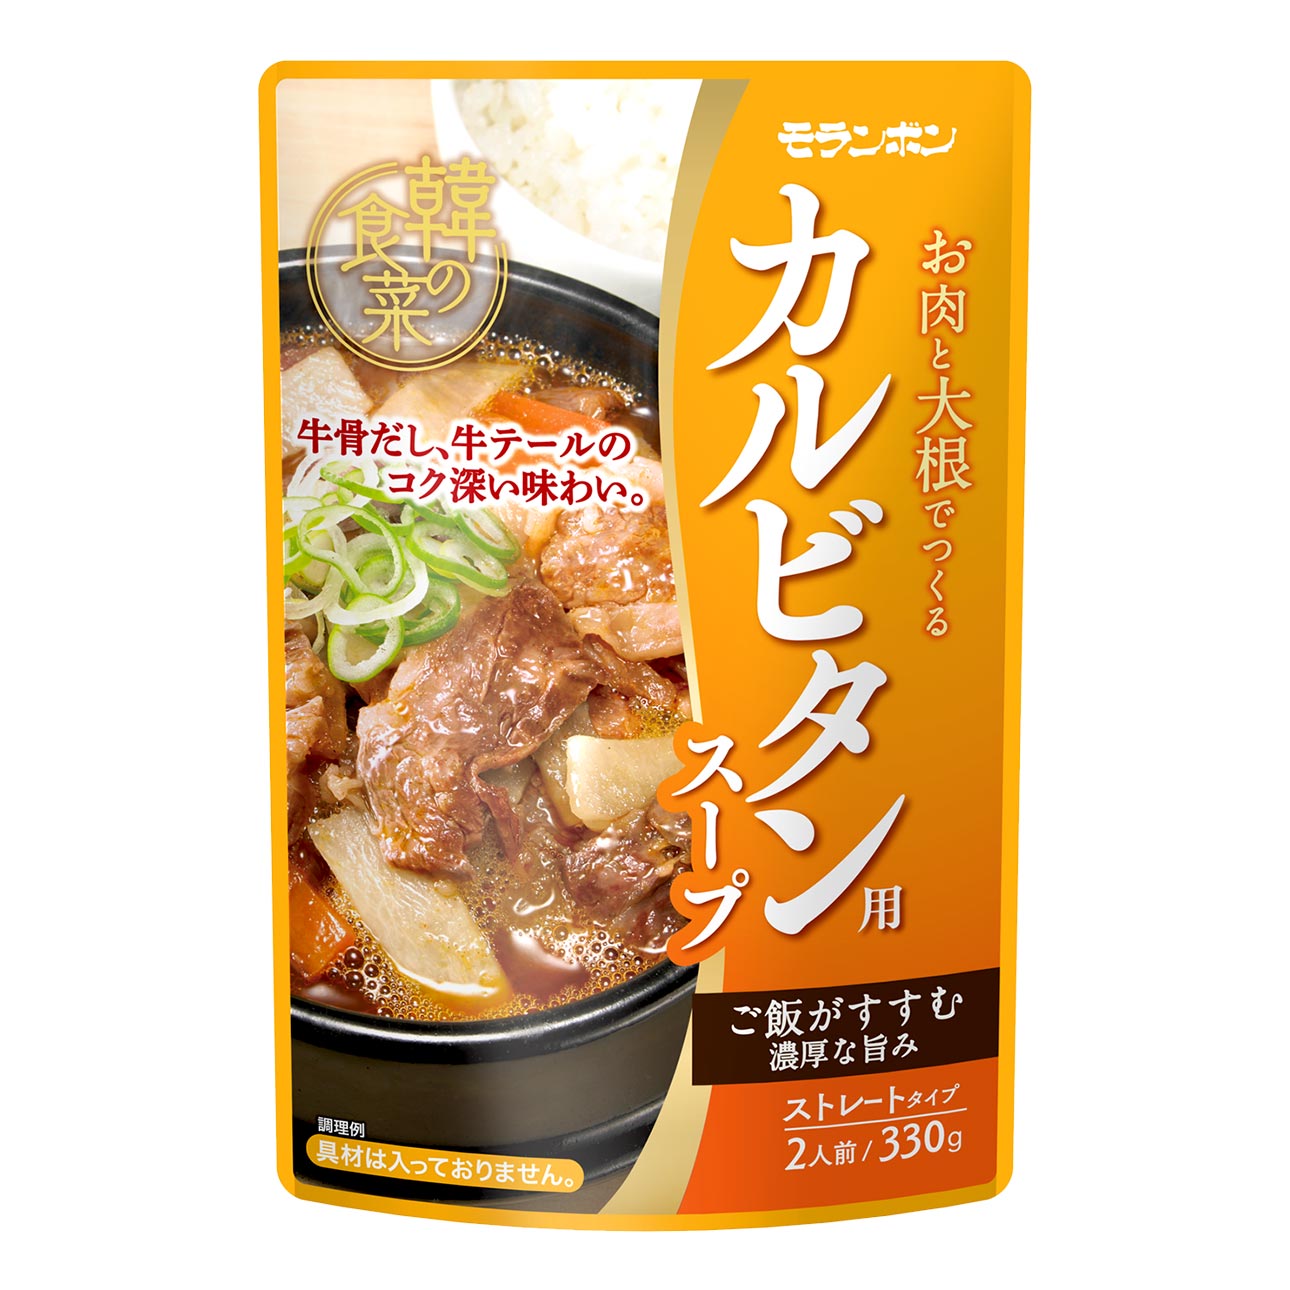 韓の食菜 カルビタン用スープ